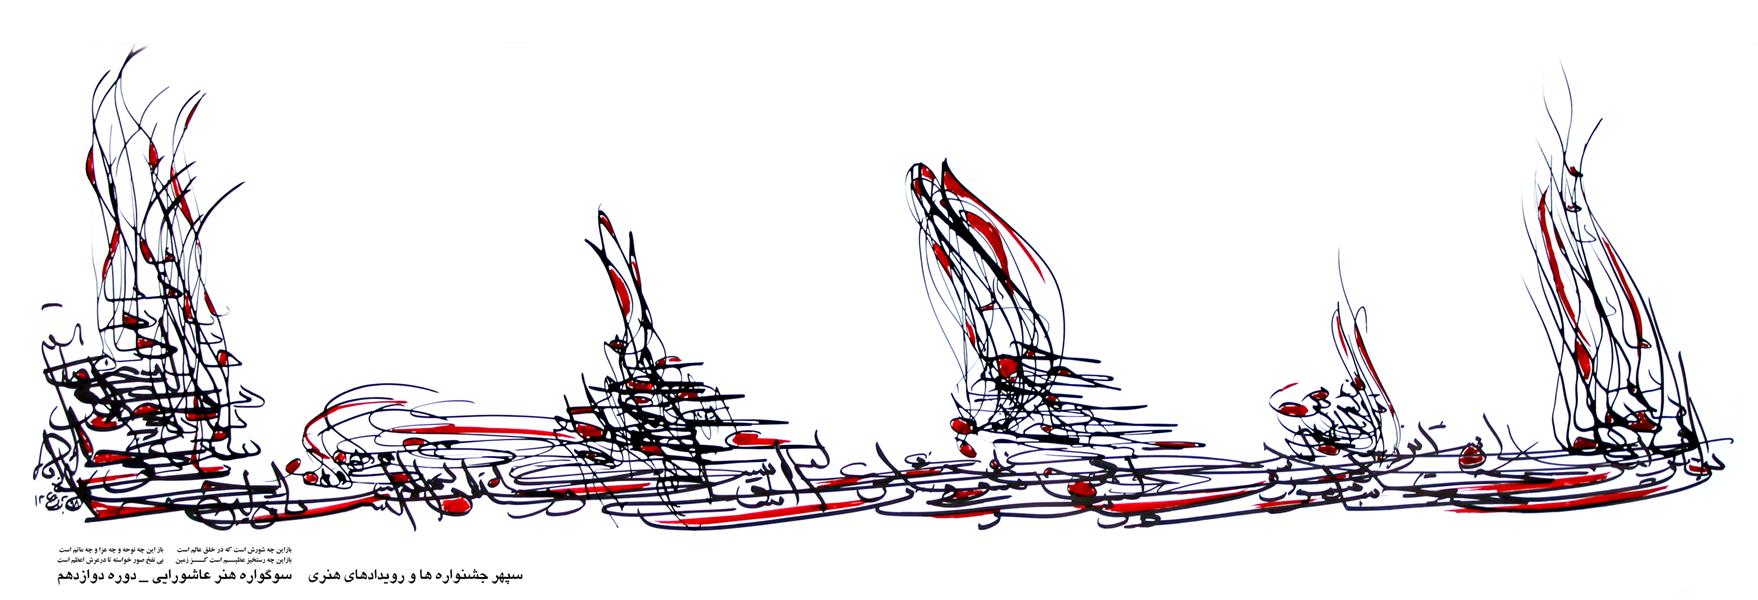 هنر خوشنویسی محفل خوشنویسی حبیب اله برزجان 35×100 بر روی کاغذ - باز این چه شورش است ....# کالیگرافی #